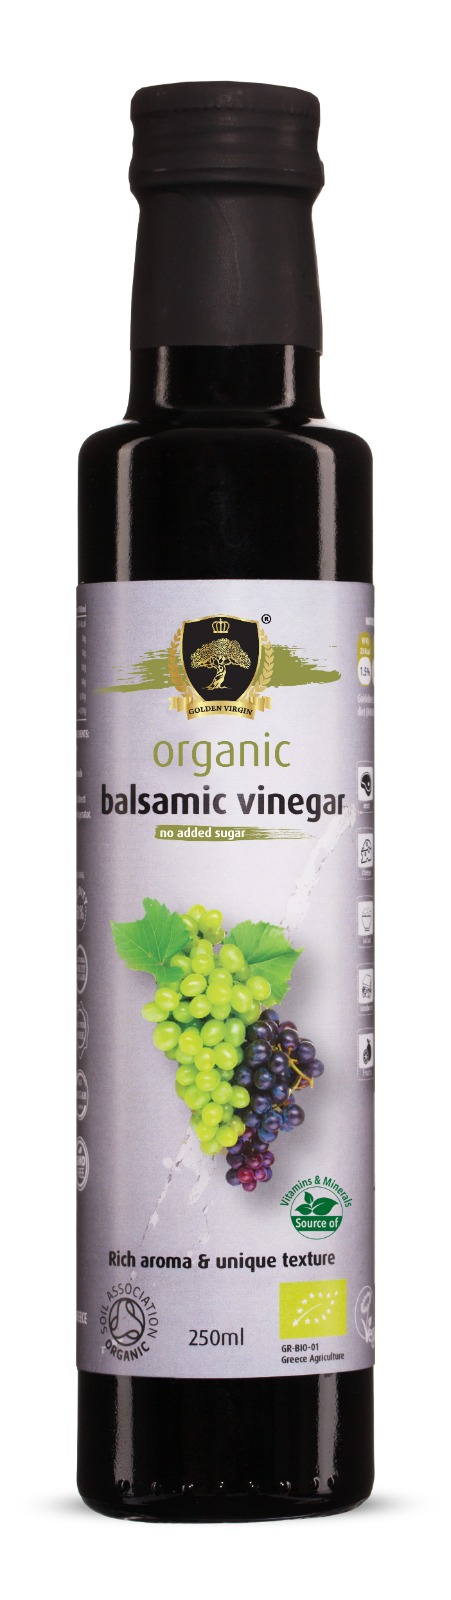 buy organic balsamic vinegar in bulk